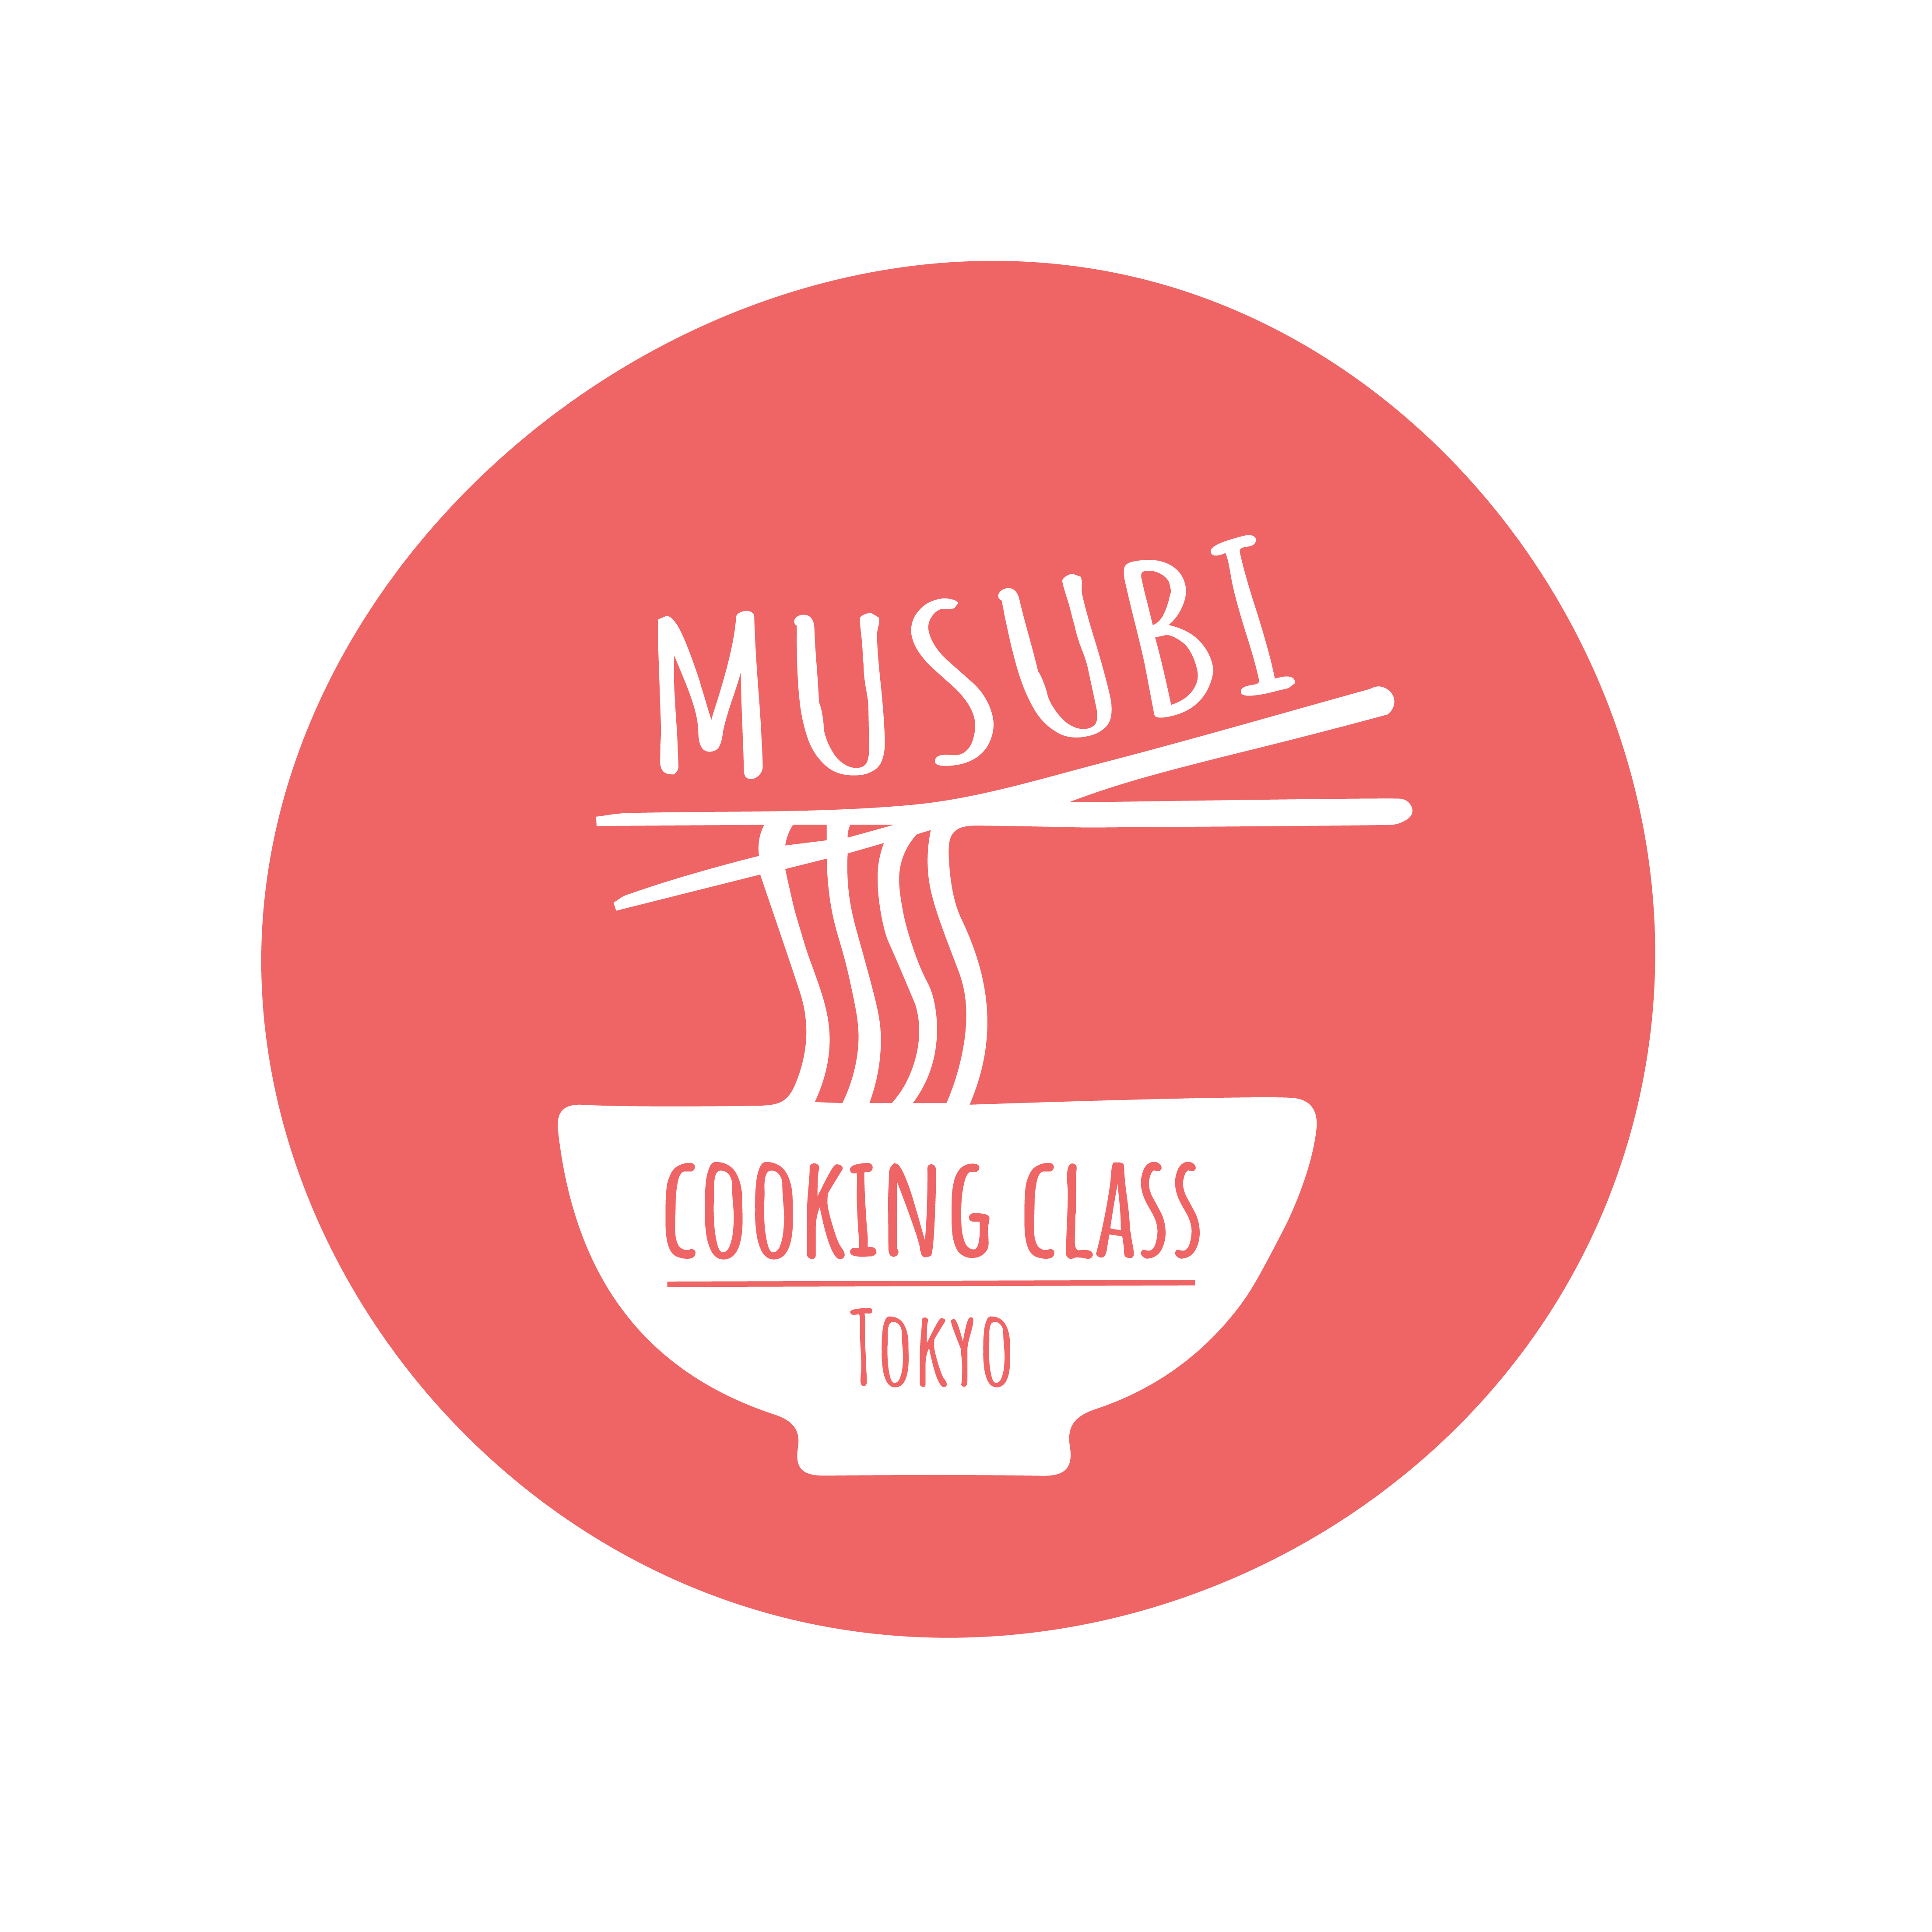 Musubi cooking class Tokyo